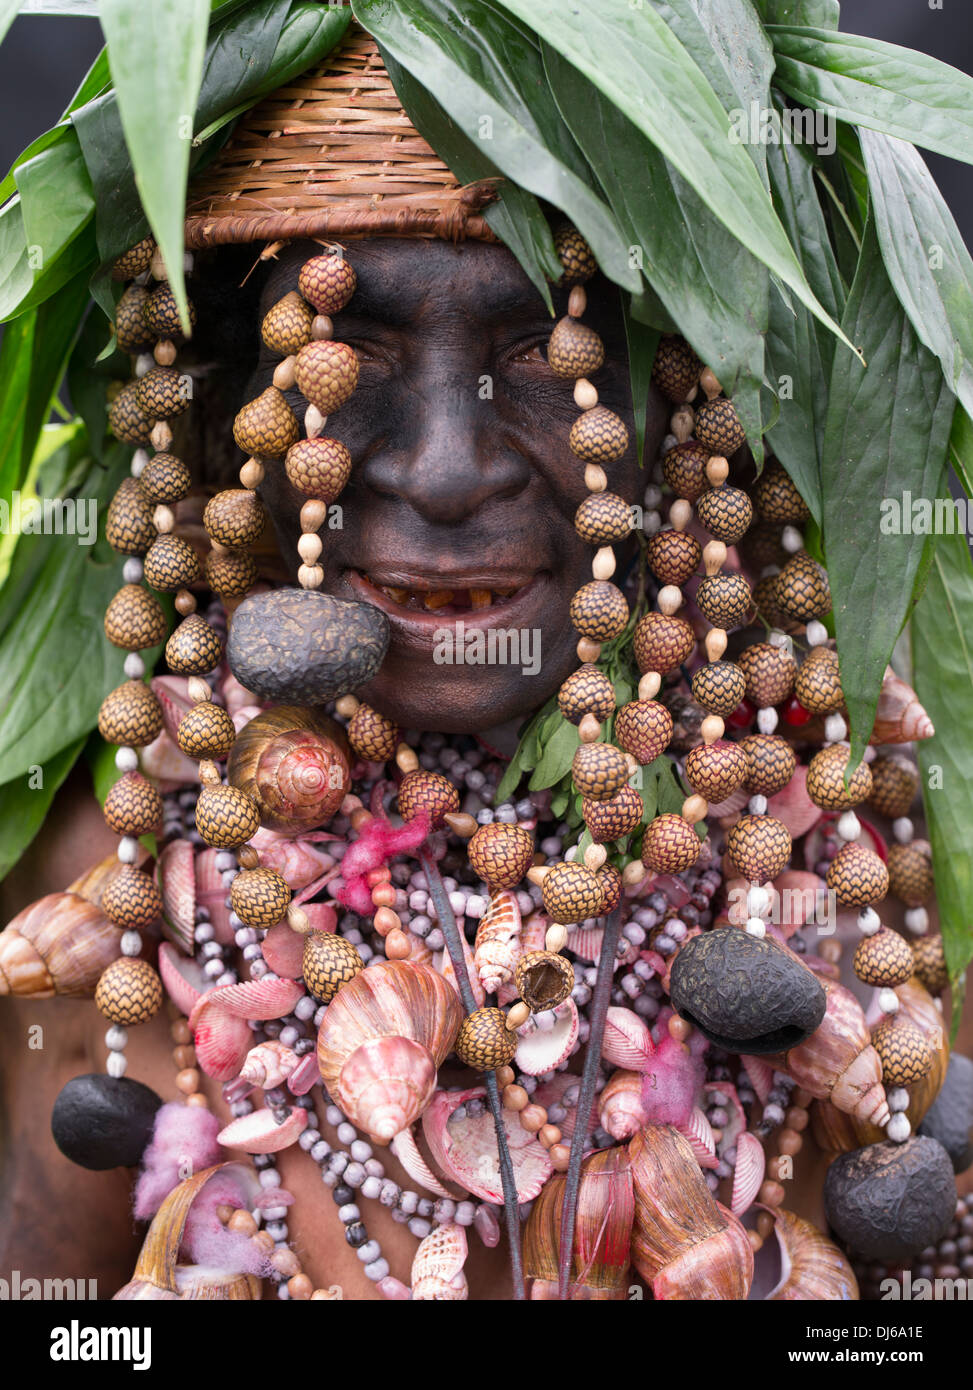 Veuve noire avec la peinture pour le visage, une partie de la Culture Tokua Singsing Groupe, Jiwaka Province - Goroka Show, Papouasie Nouvelle Guinée Banque D'Images